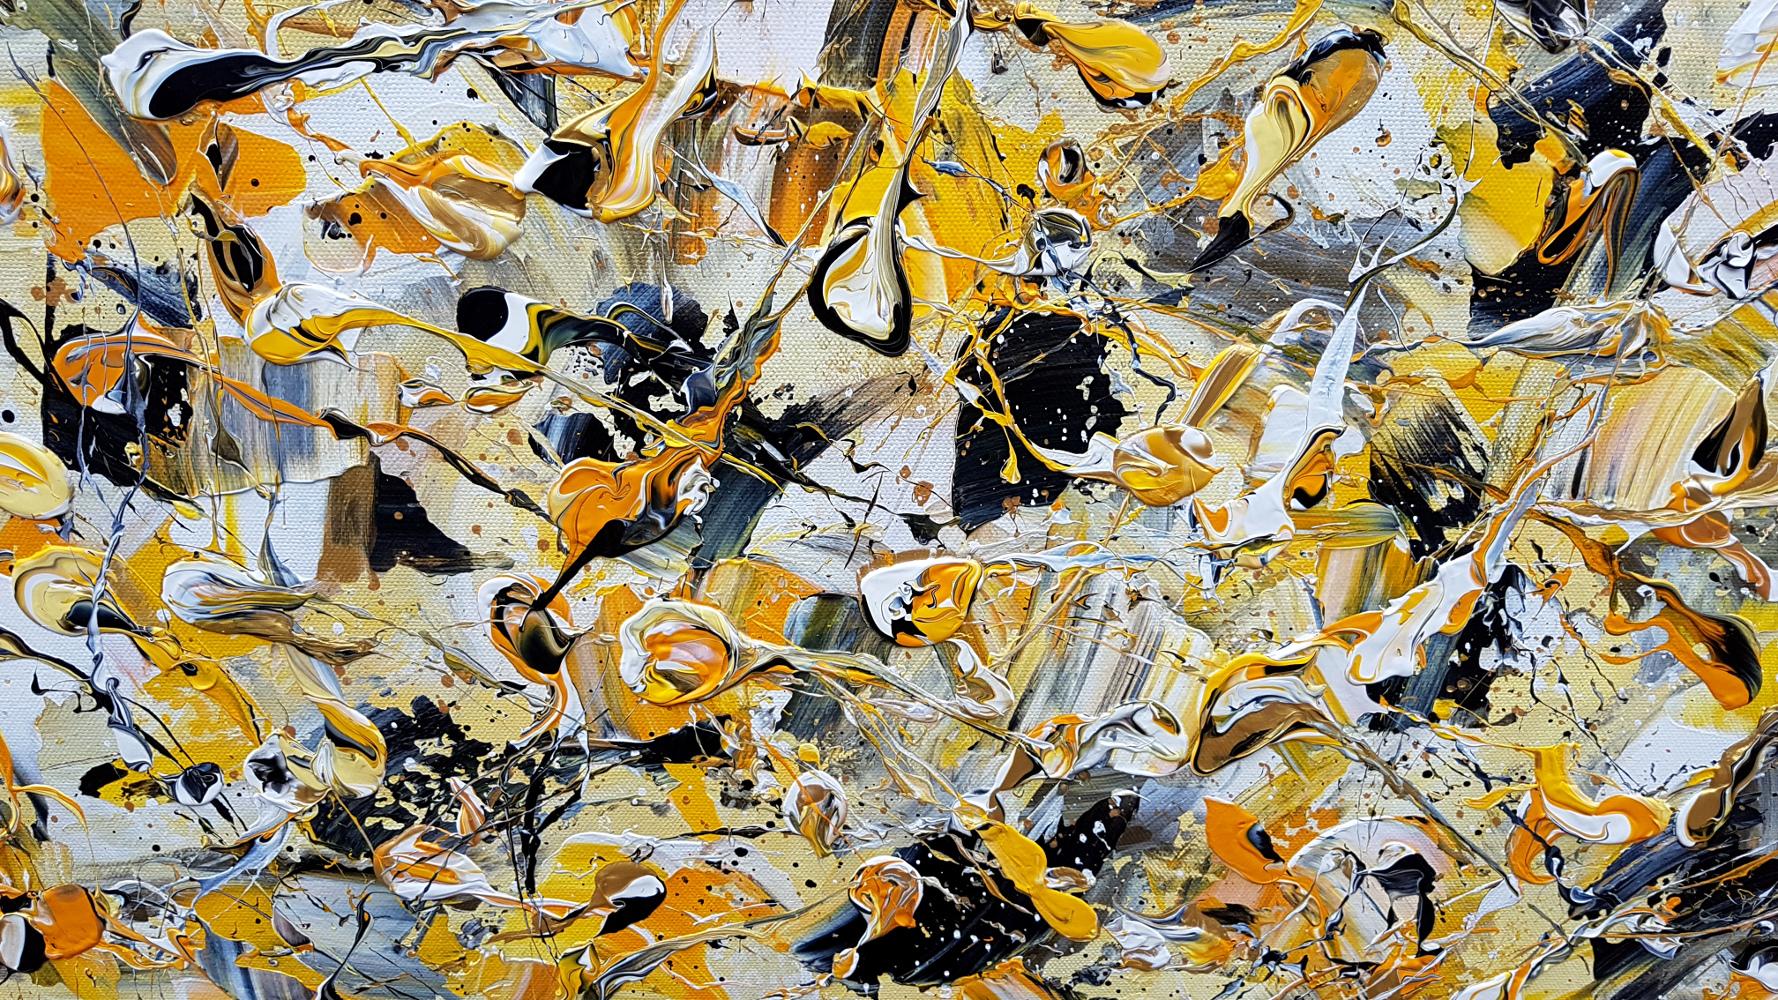 Abstract Synapses - Dance Of The Bumble Bee #5 By Lucy Moore [2022]

original
Acrylique sur toile
Taille de l'image : H:60 cm x L:60 cm
Taille complète de l'œuvre non encadrée : H:60 cm x L:60 cm x P:1,5cm
Vendu sans cadre
Veuillez noter que les